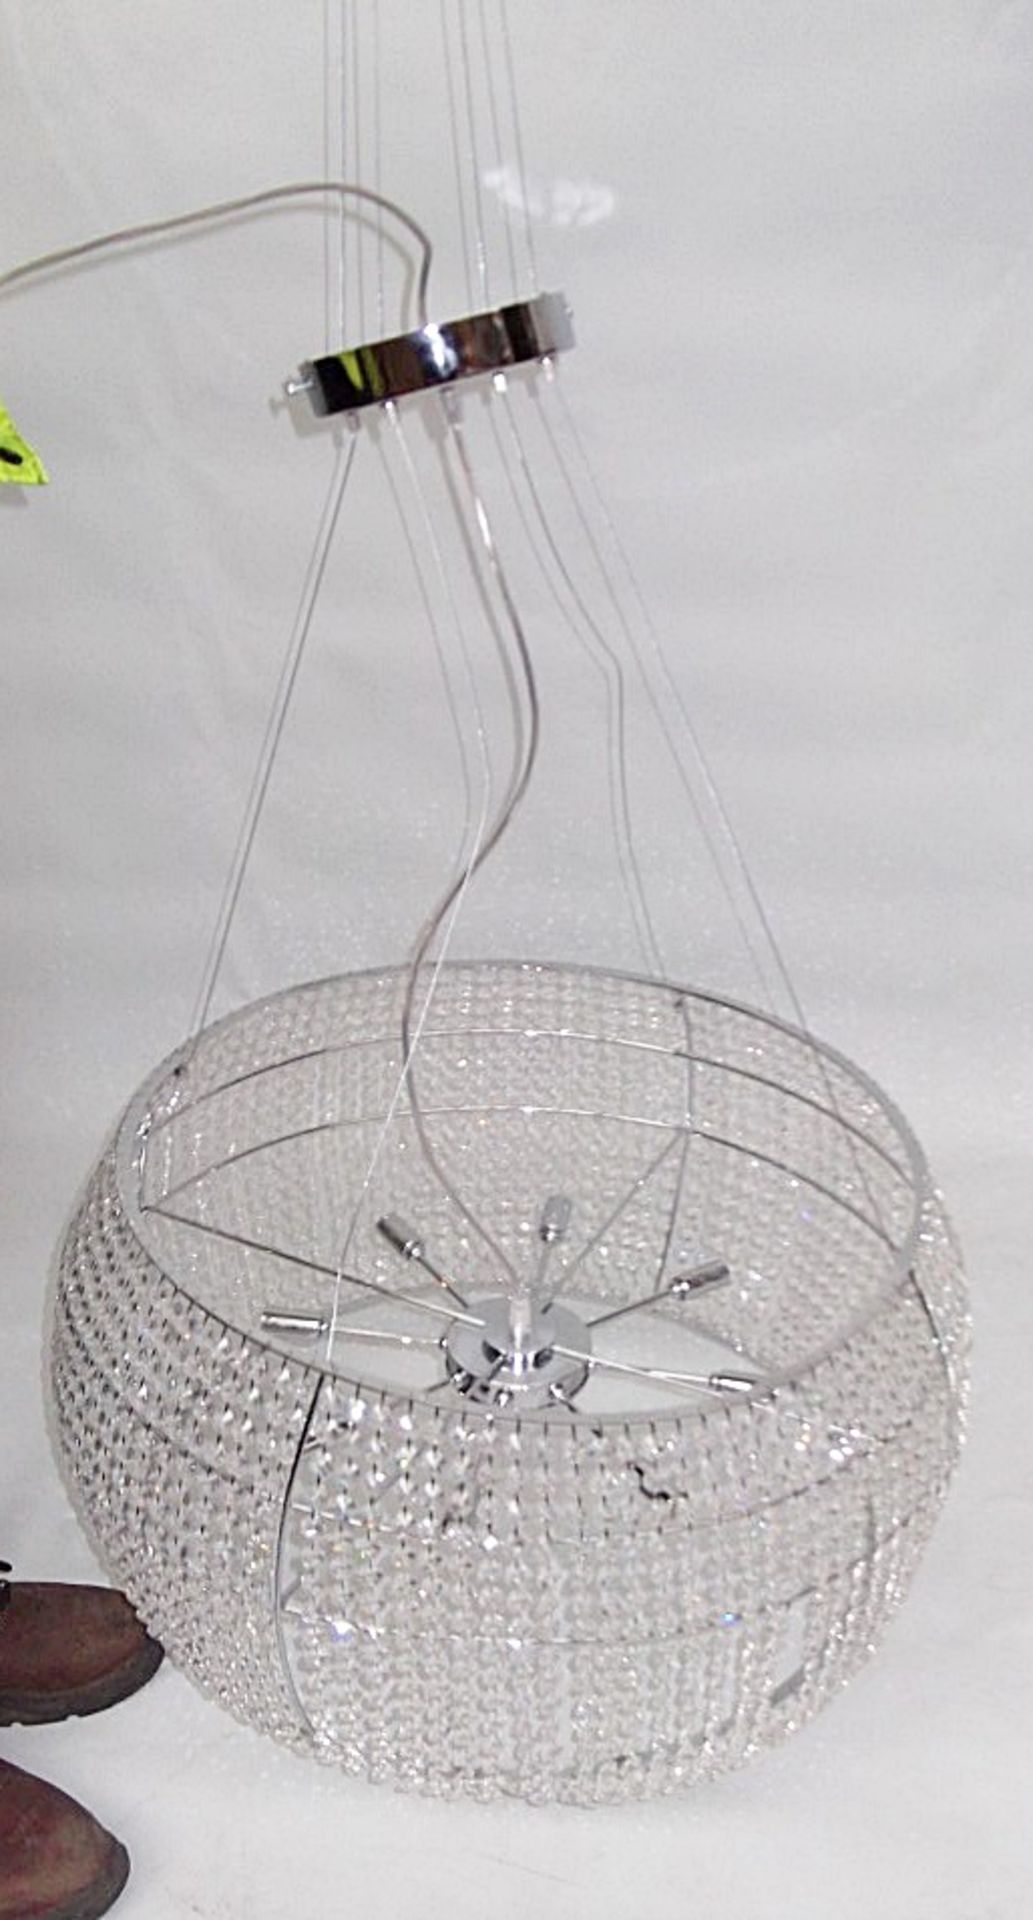 1 x CATTELAN KIDAL Ceiling Lamp - Diameter 50cm, Height 33cm - Ref: 4427072B - CL087 - Location: - Image 5 of 5